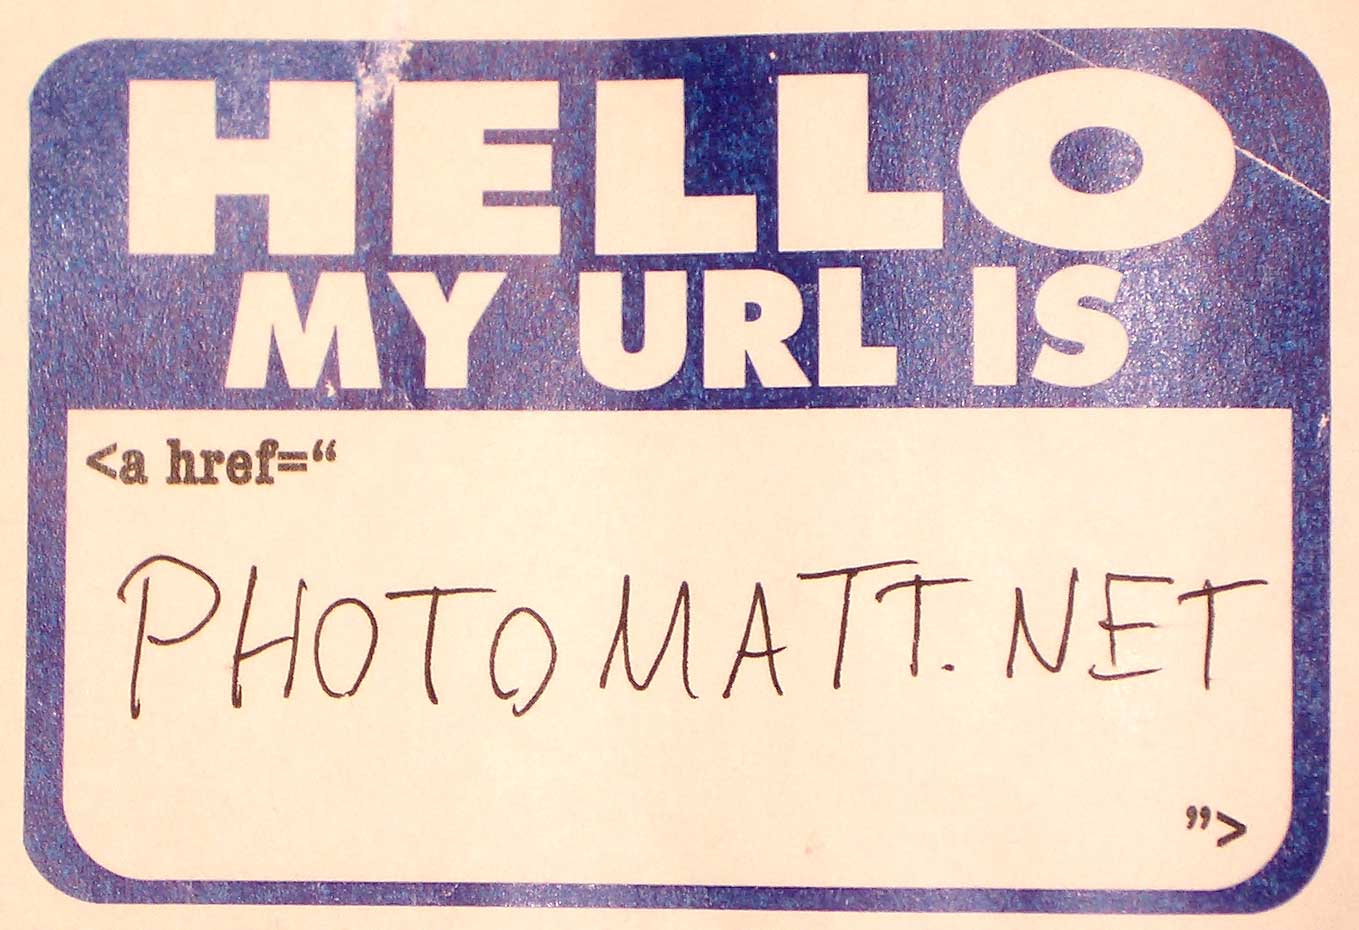 Hello My URL is Photomatt.net